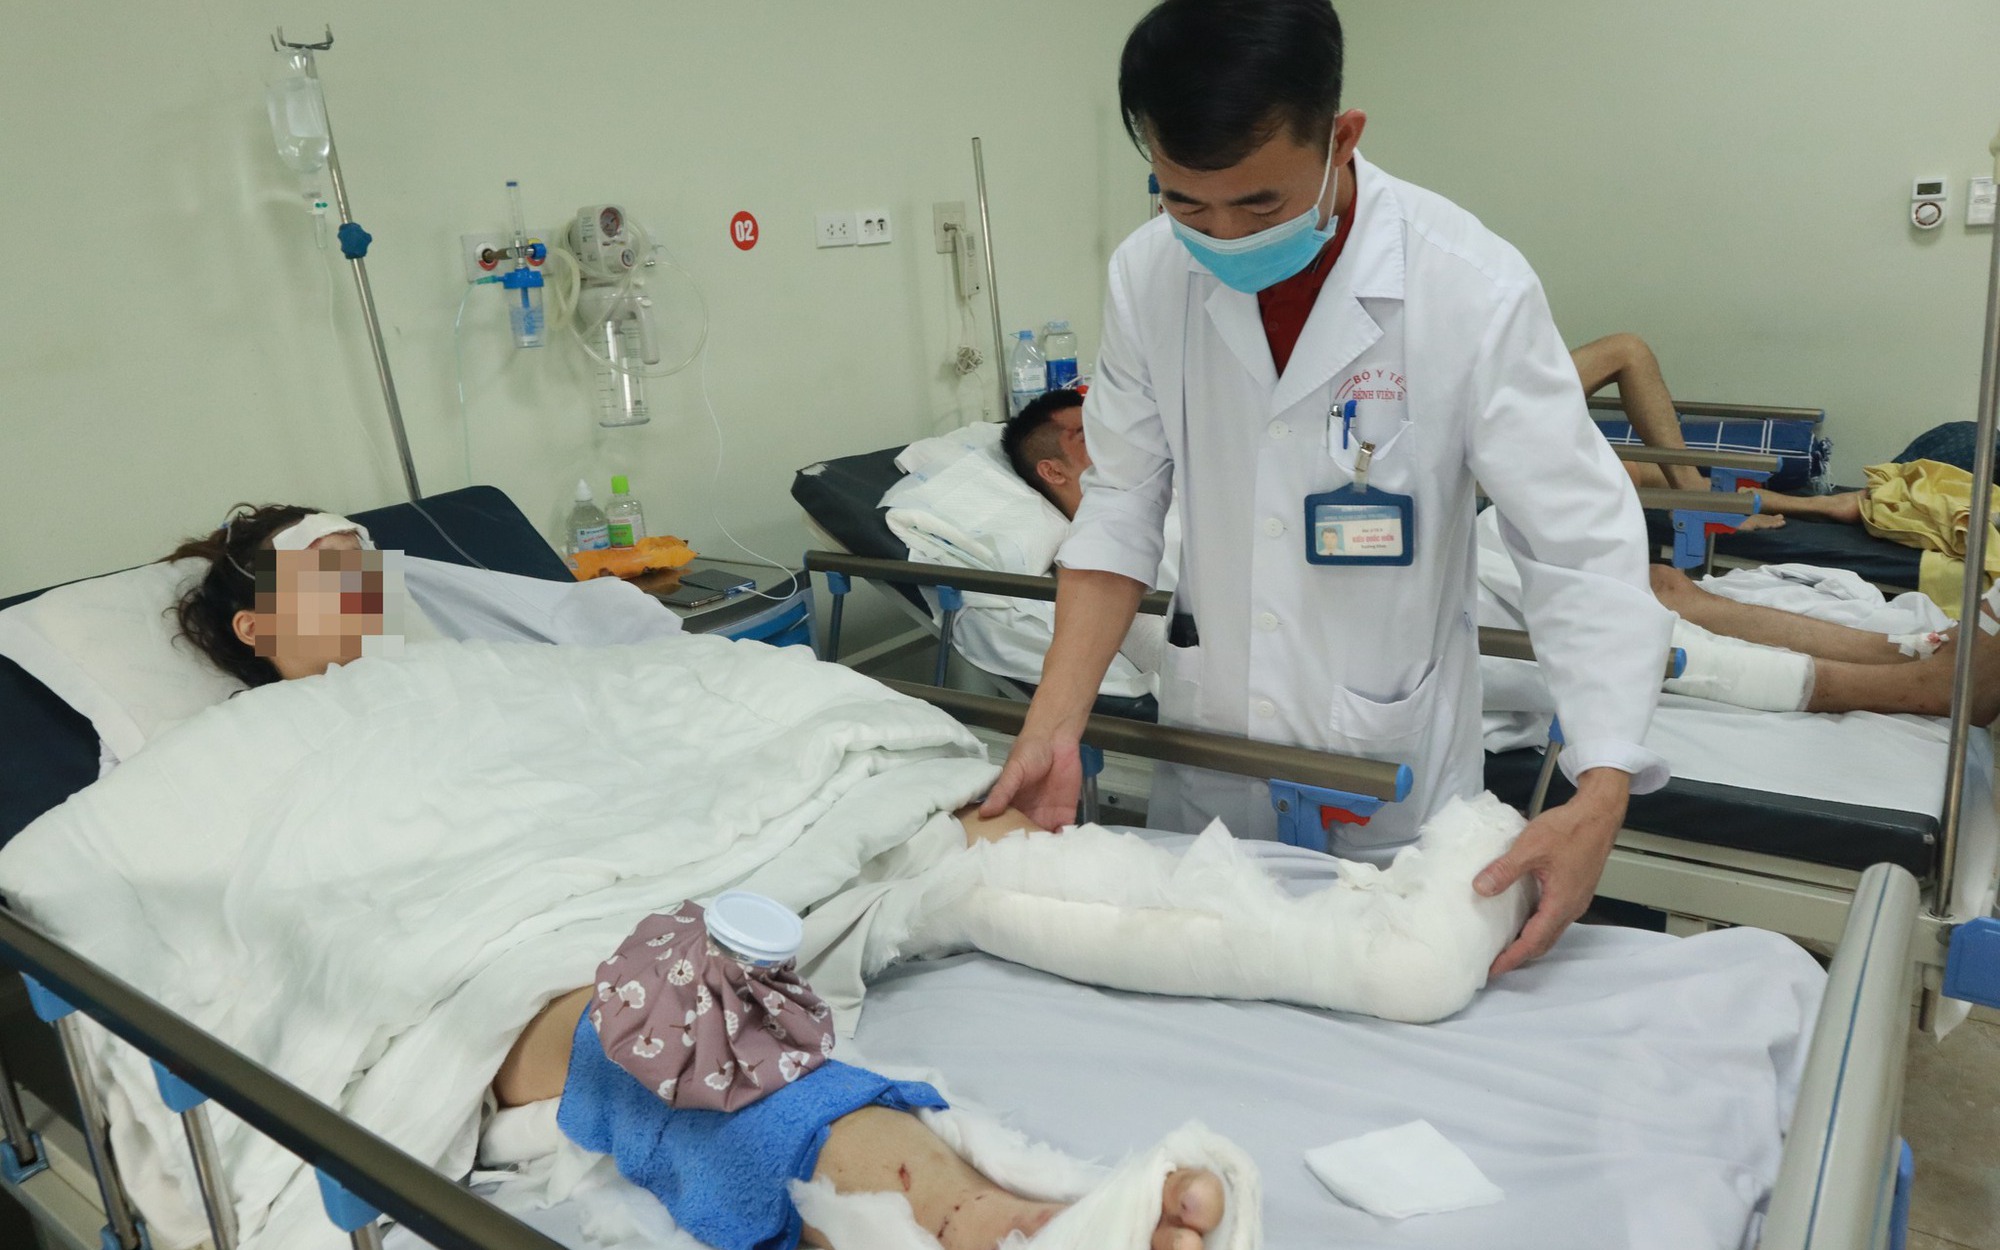 Vụ tai nạn liên hoàn ở đường Võ Chí Công: Có bệnh nhân tiên lượng nặng, khó phục hồi